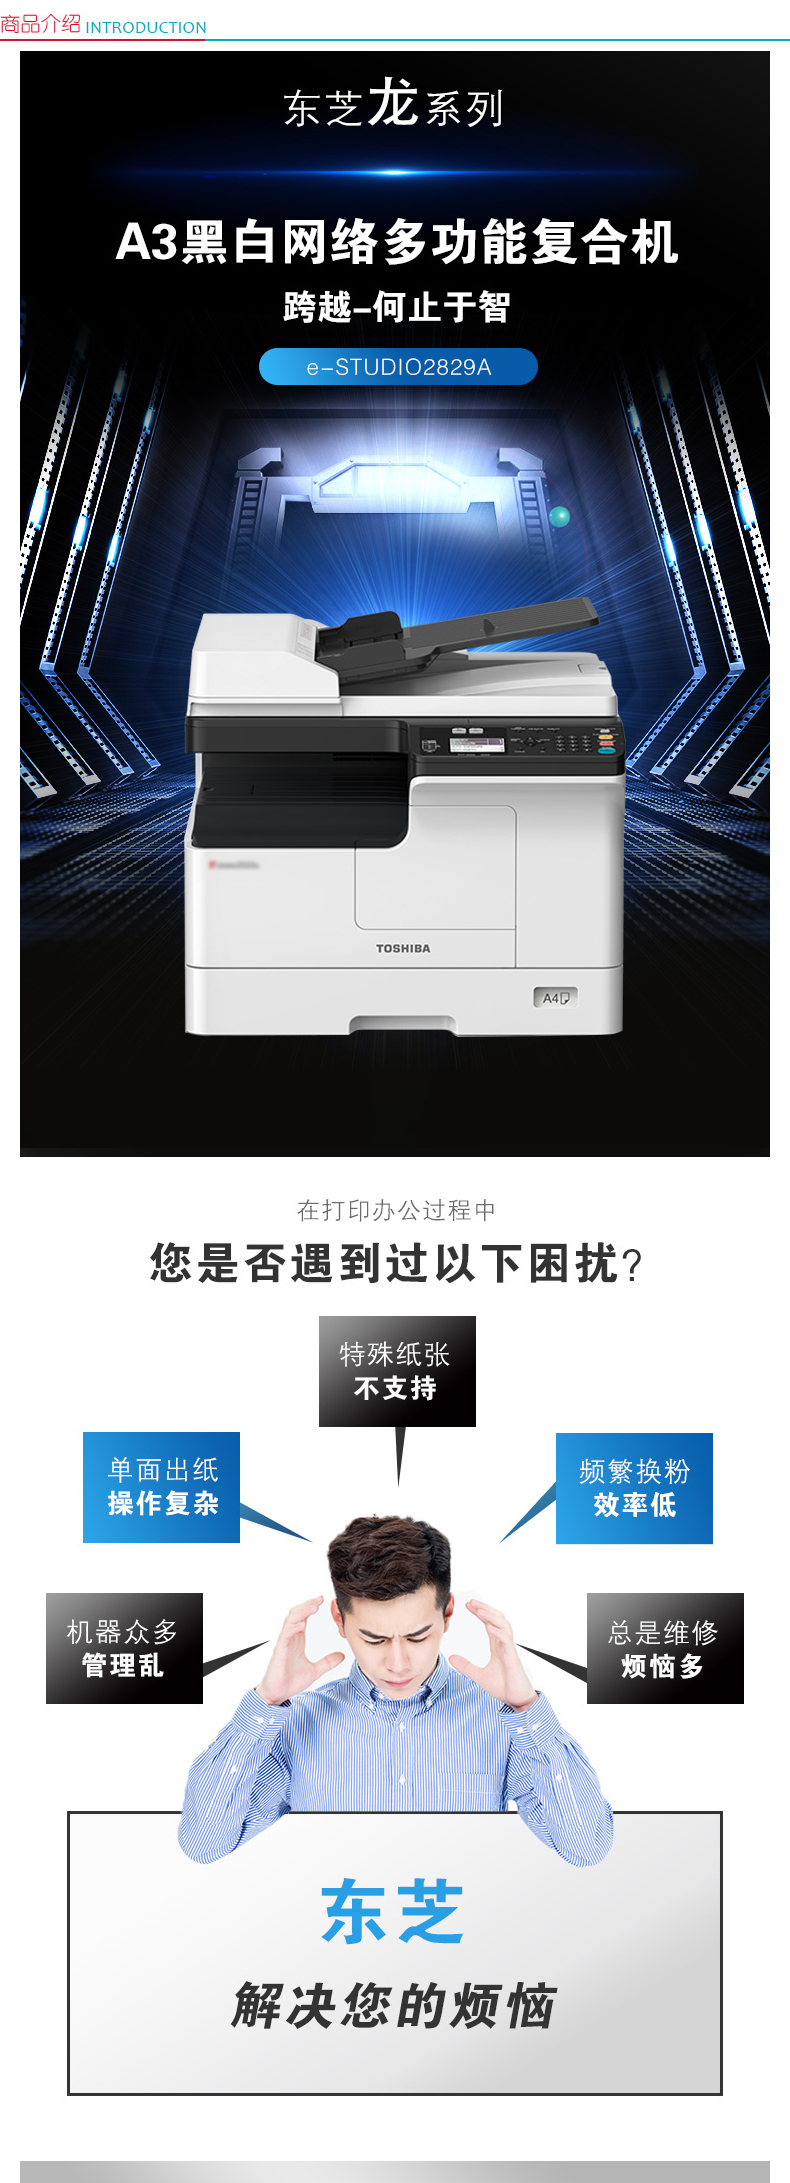 东芝 TOSHIBA A3黑白数码复印机 e-STUDIO 2829A  (复印/网络打印/网络扫描/双面器/双纸盒/双面输稿器/工作台)